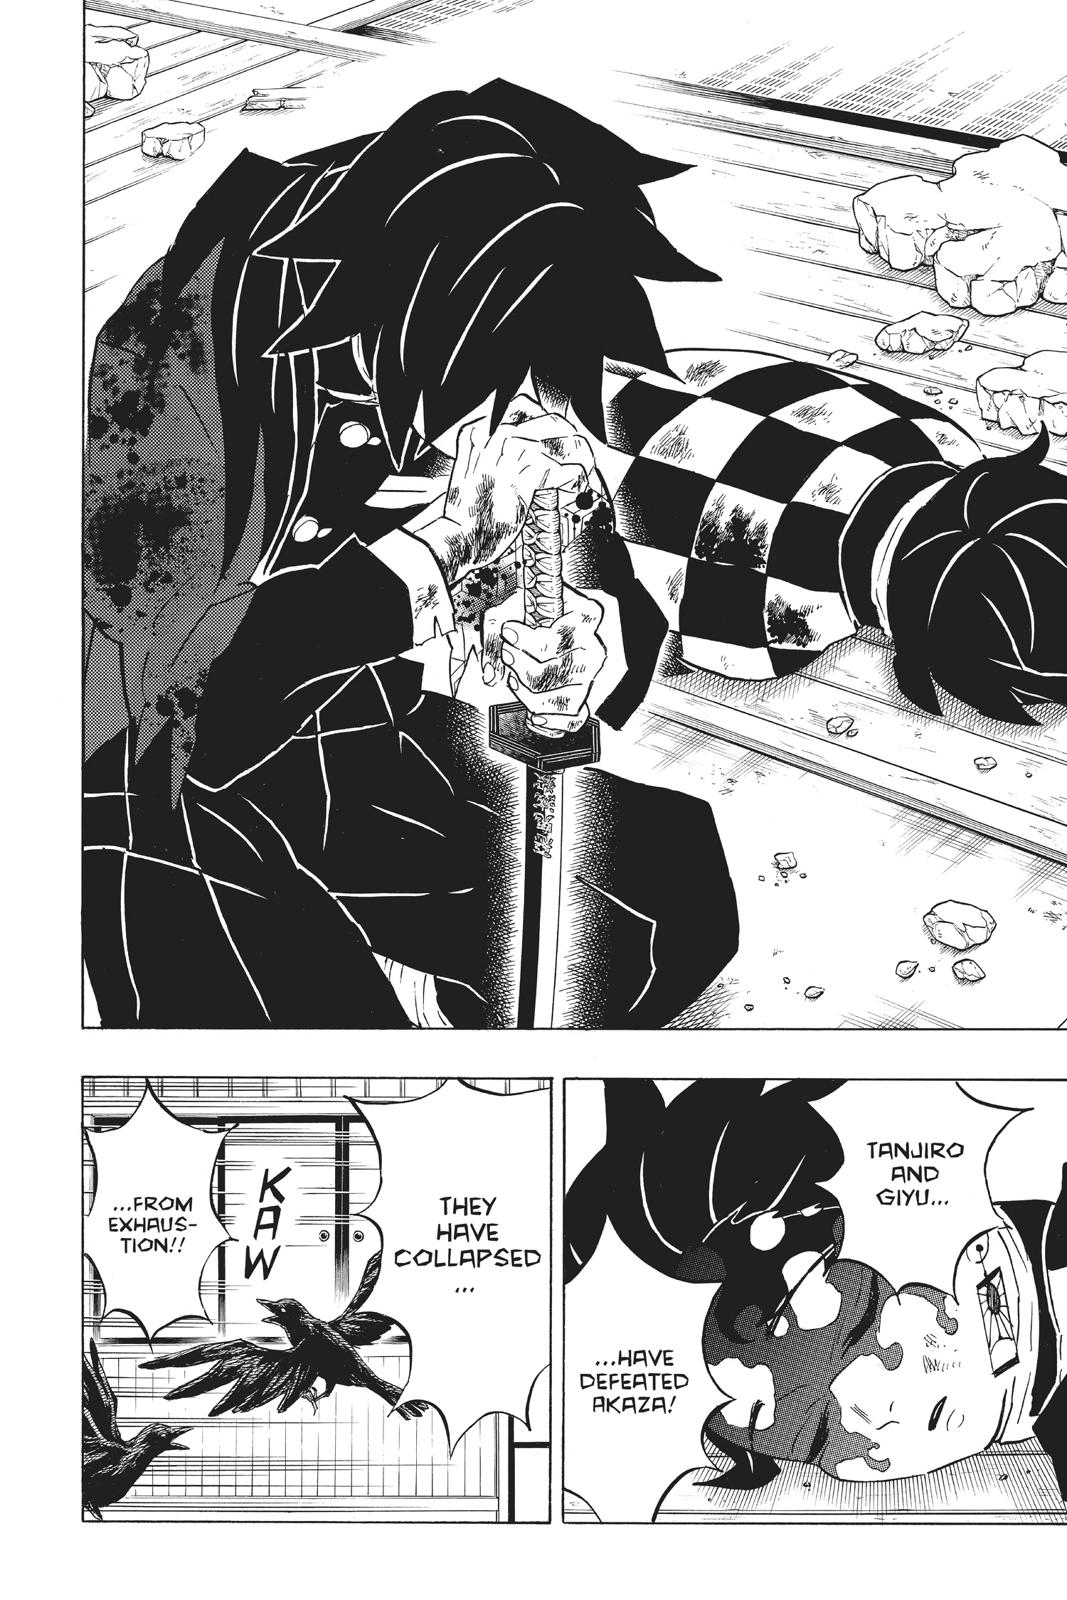 Demon Slayer Manga Manga Chapter - 157 - image 4